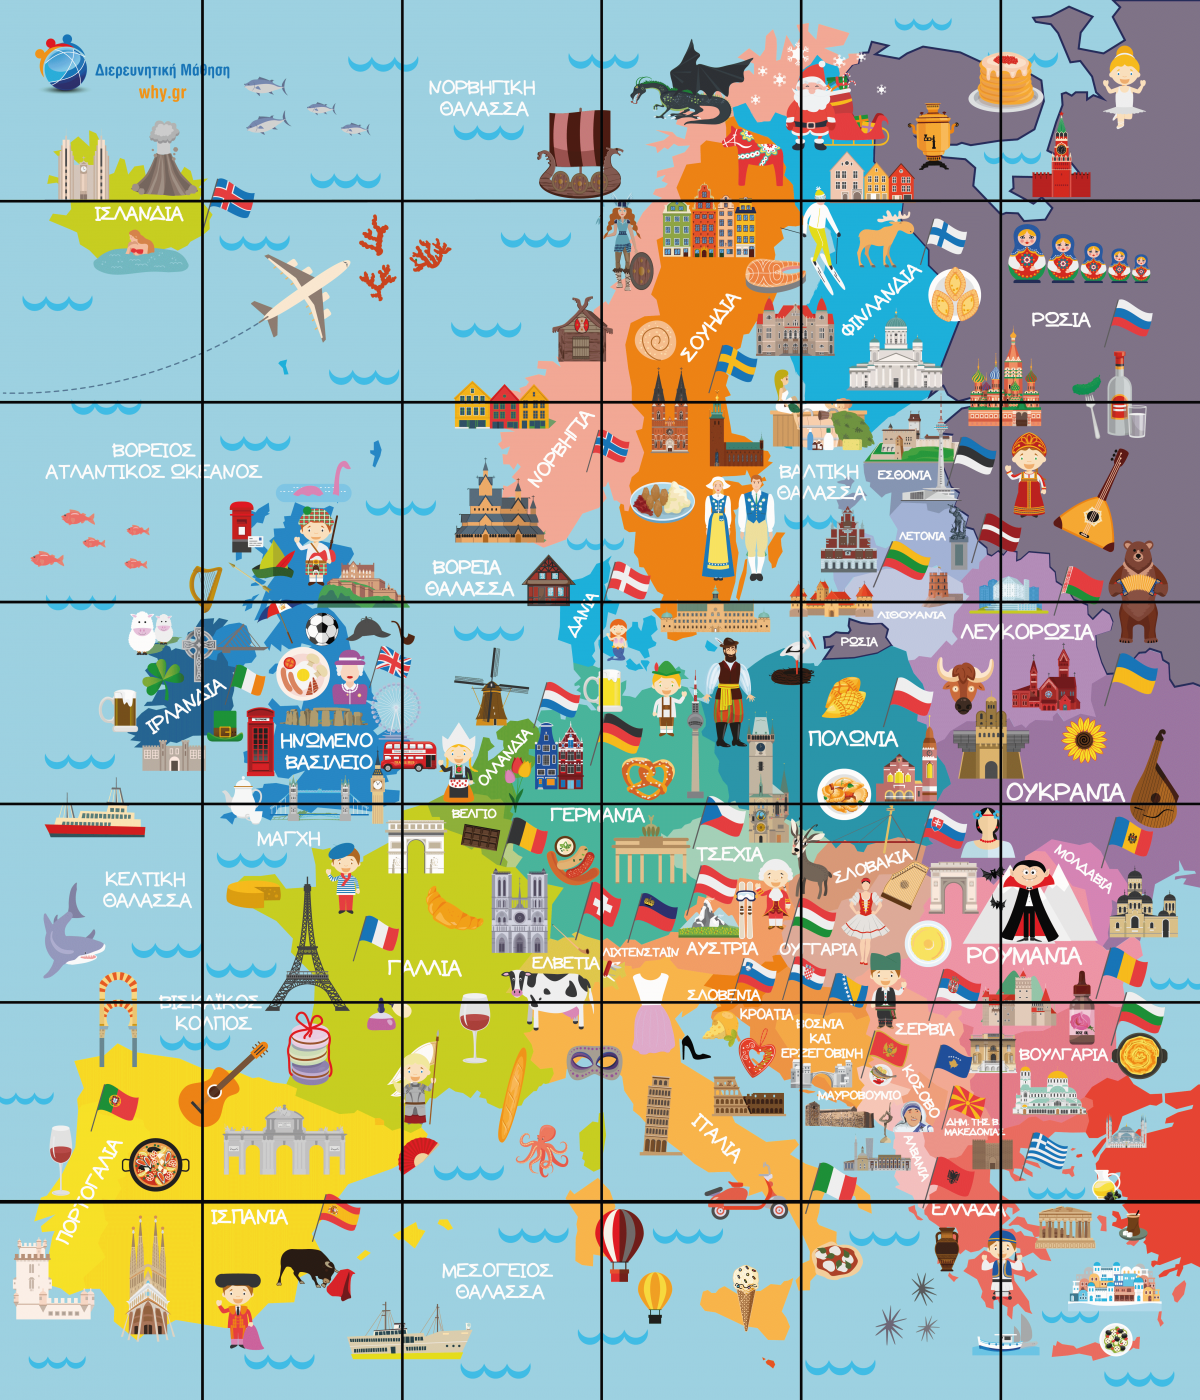 BeeBot - Χάρτης της Ευρώπης